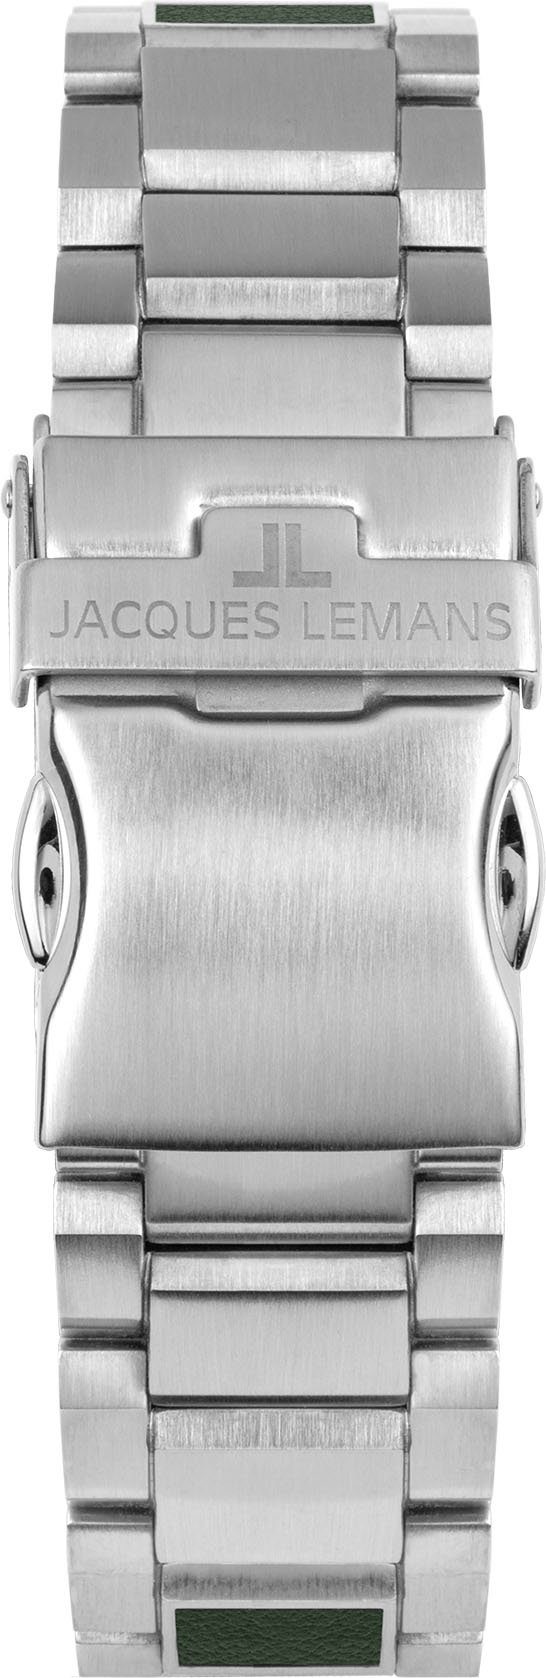 Jacques Chronograph Apple, Lemans 1-2115G Power Eco Solar